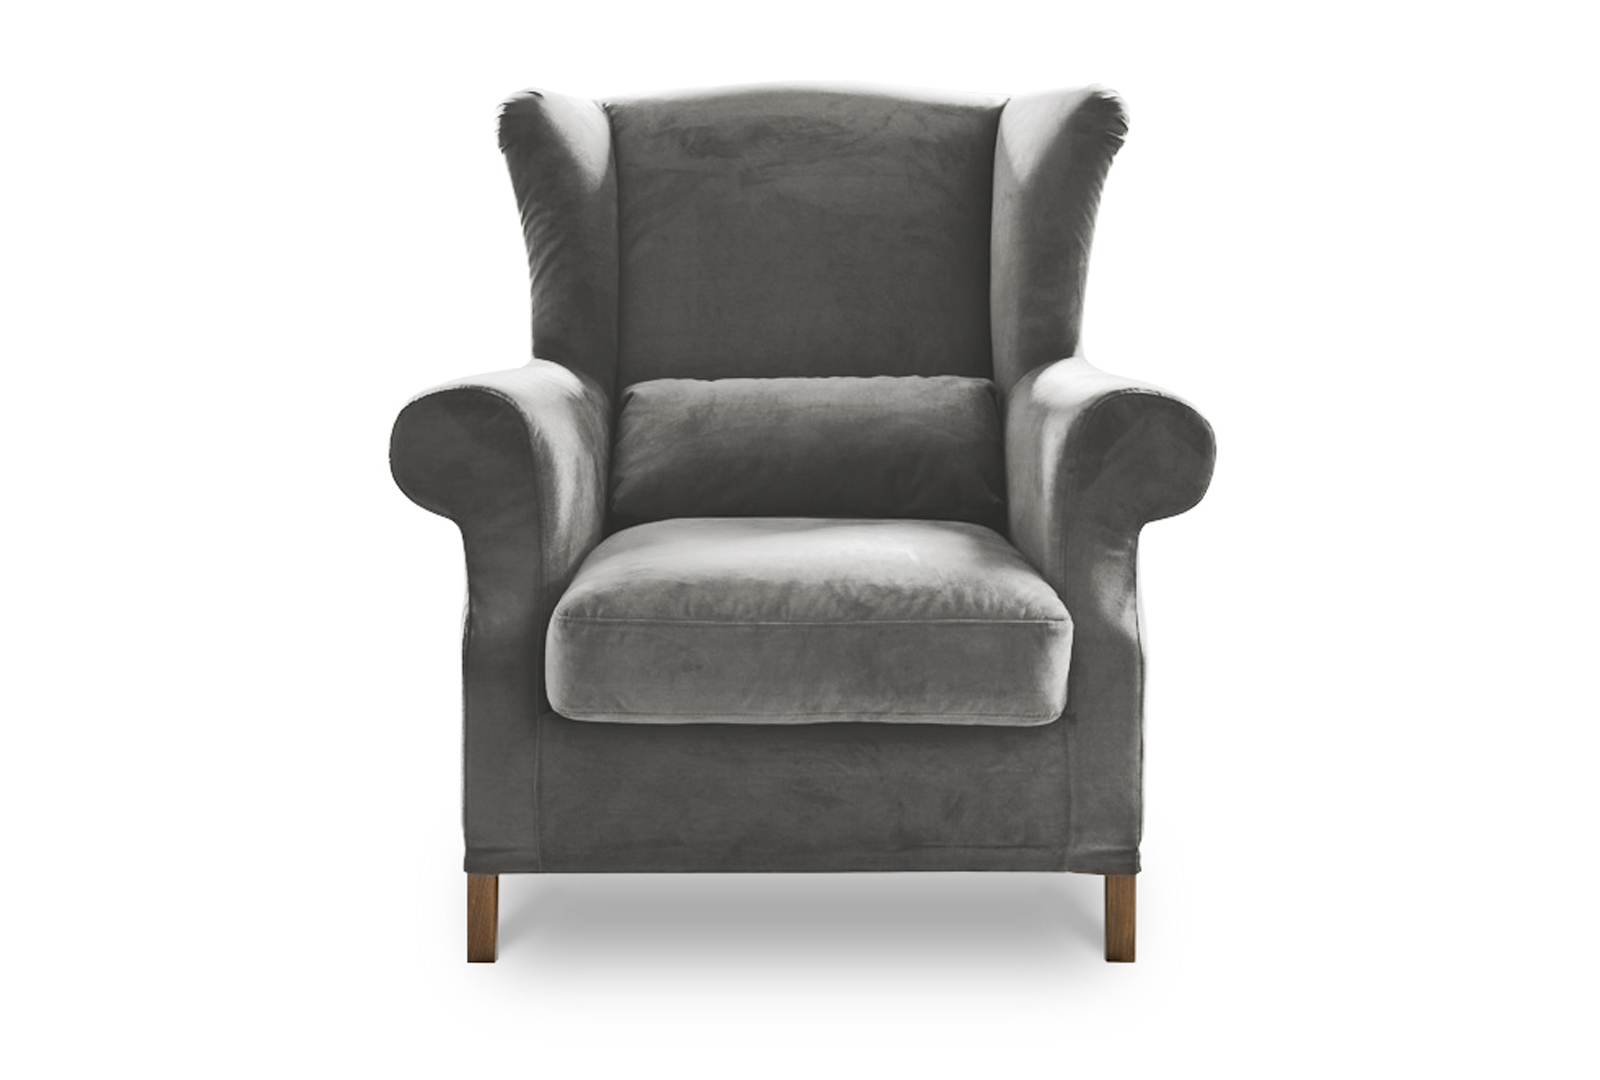 Harlow granite armchair